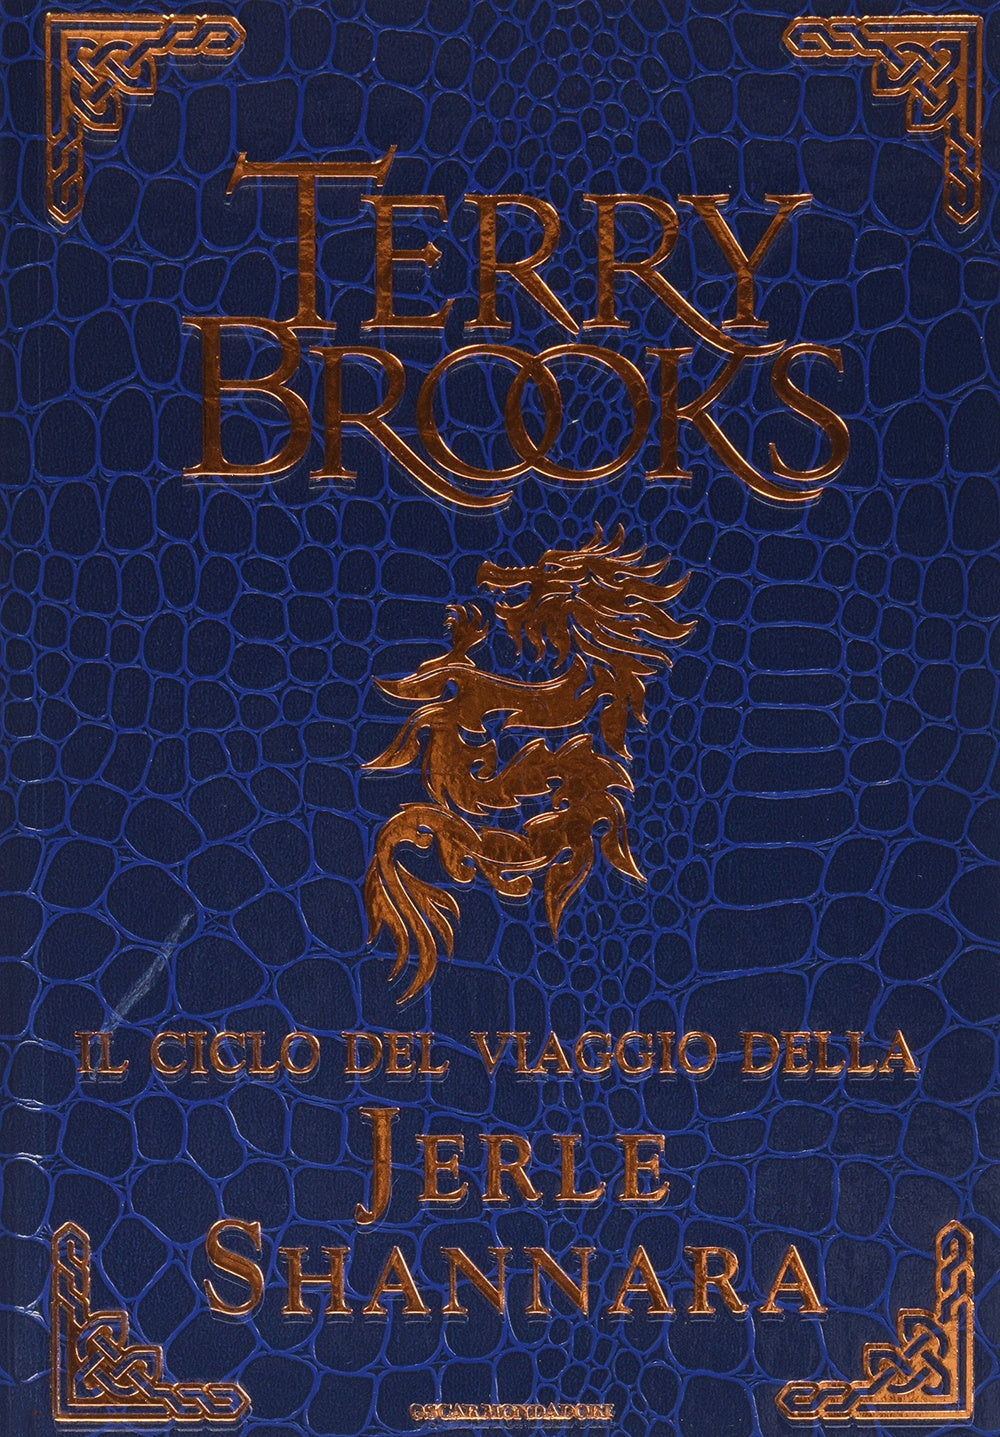 Il ciclo del viaggio della Jerle Shannara: La strega di Ilse-Il labirinto-L'ultima magia.